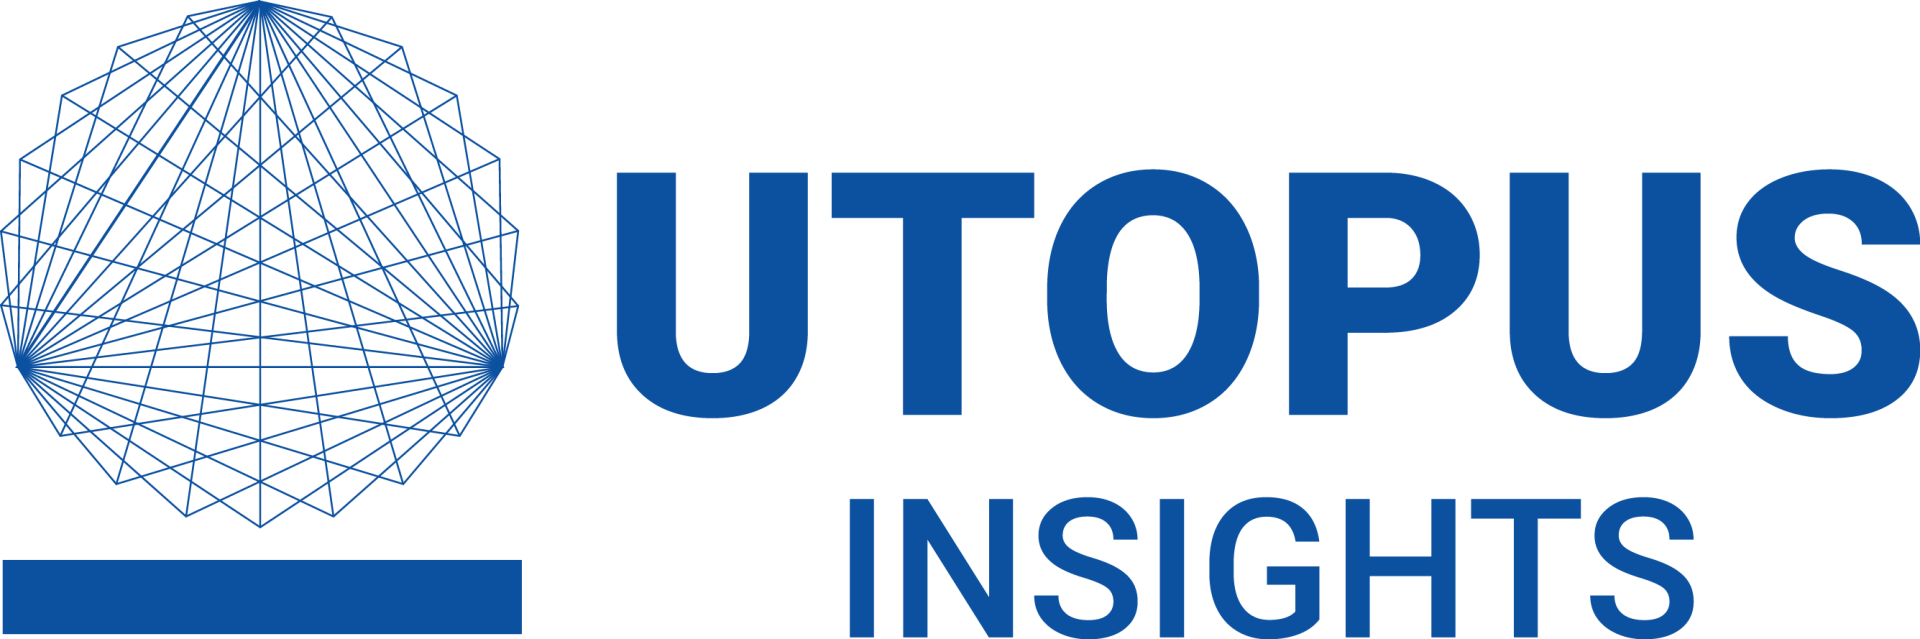 Utopus Insight Logo